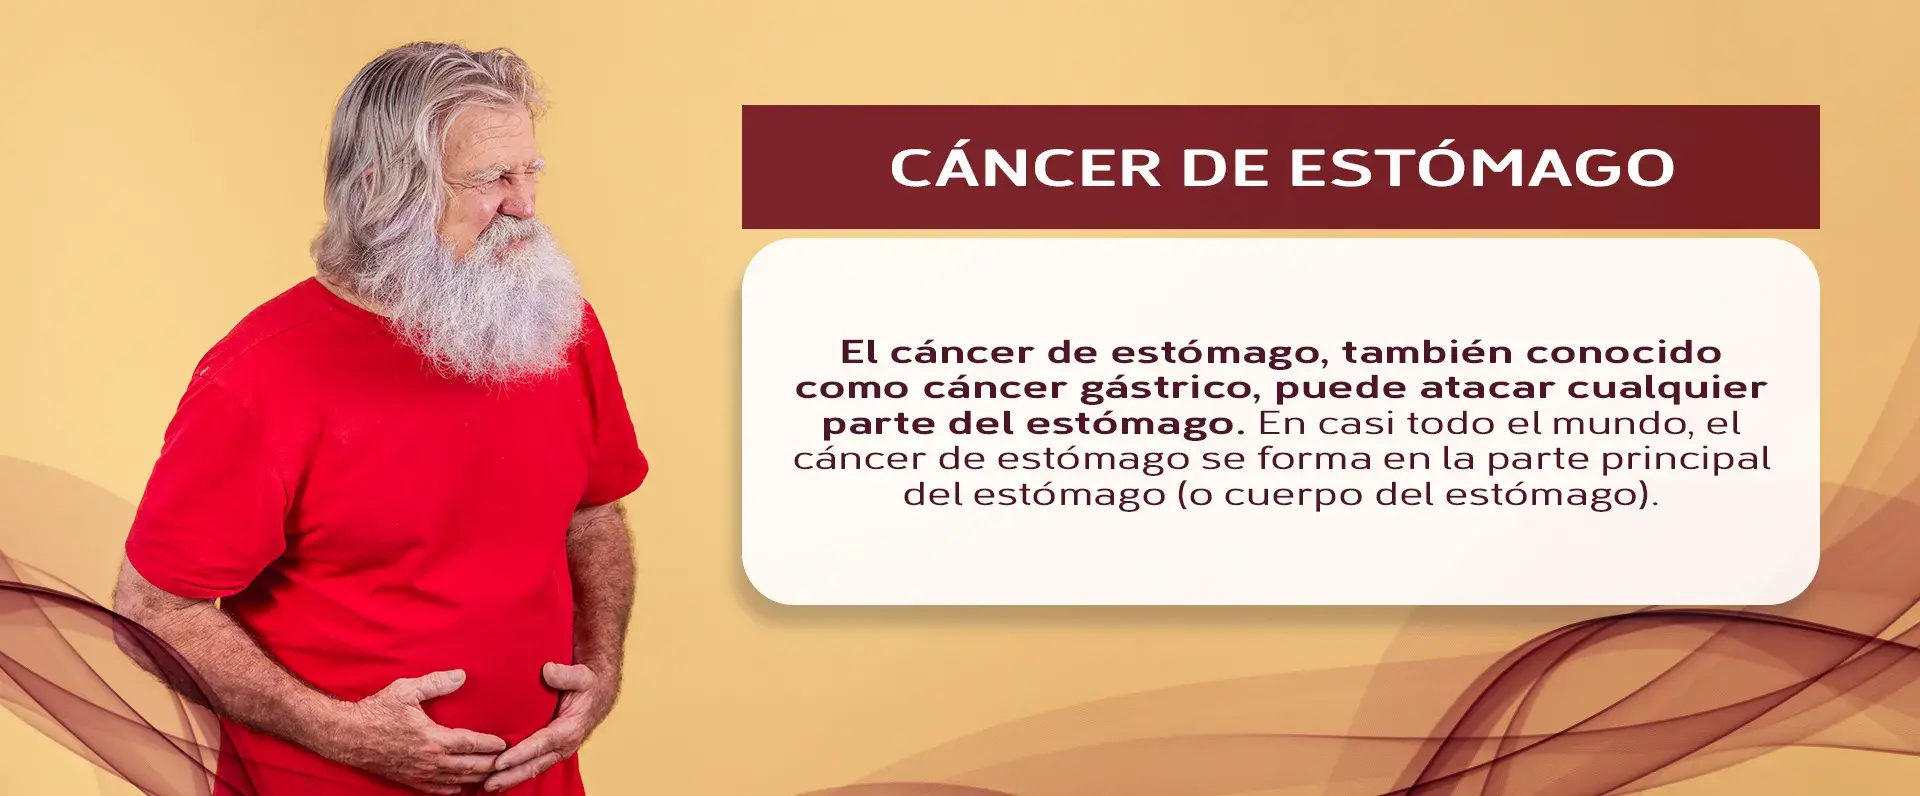 El cáncer de estómago se desarrolla en varias zonas del estómago, especialmente en la parte principal 